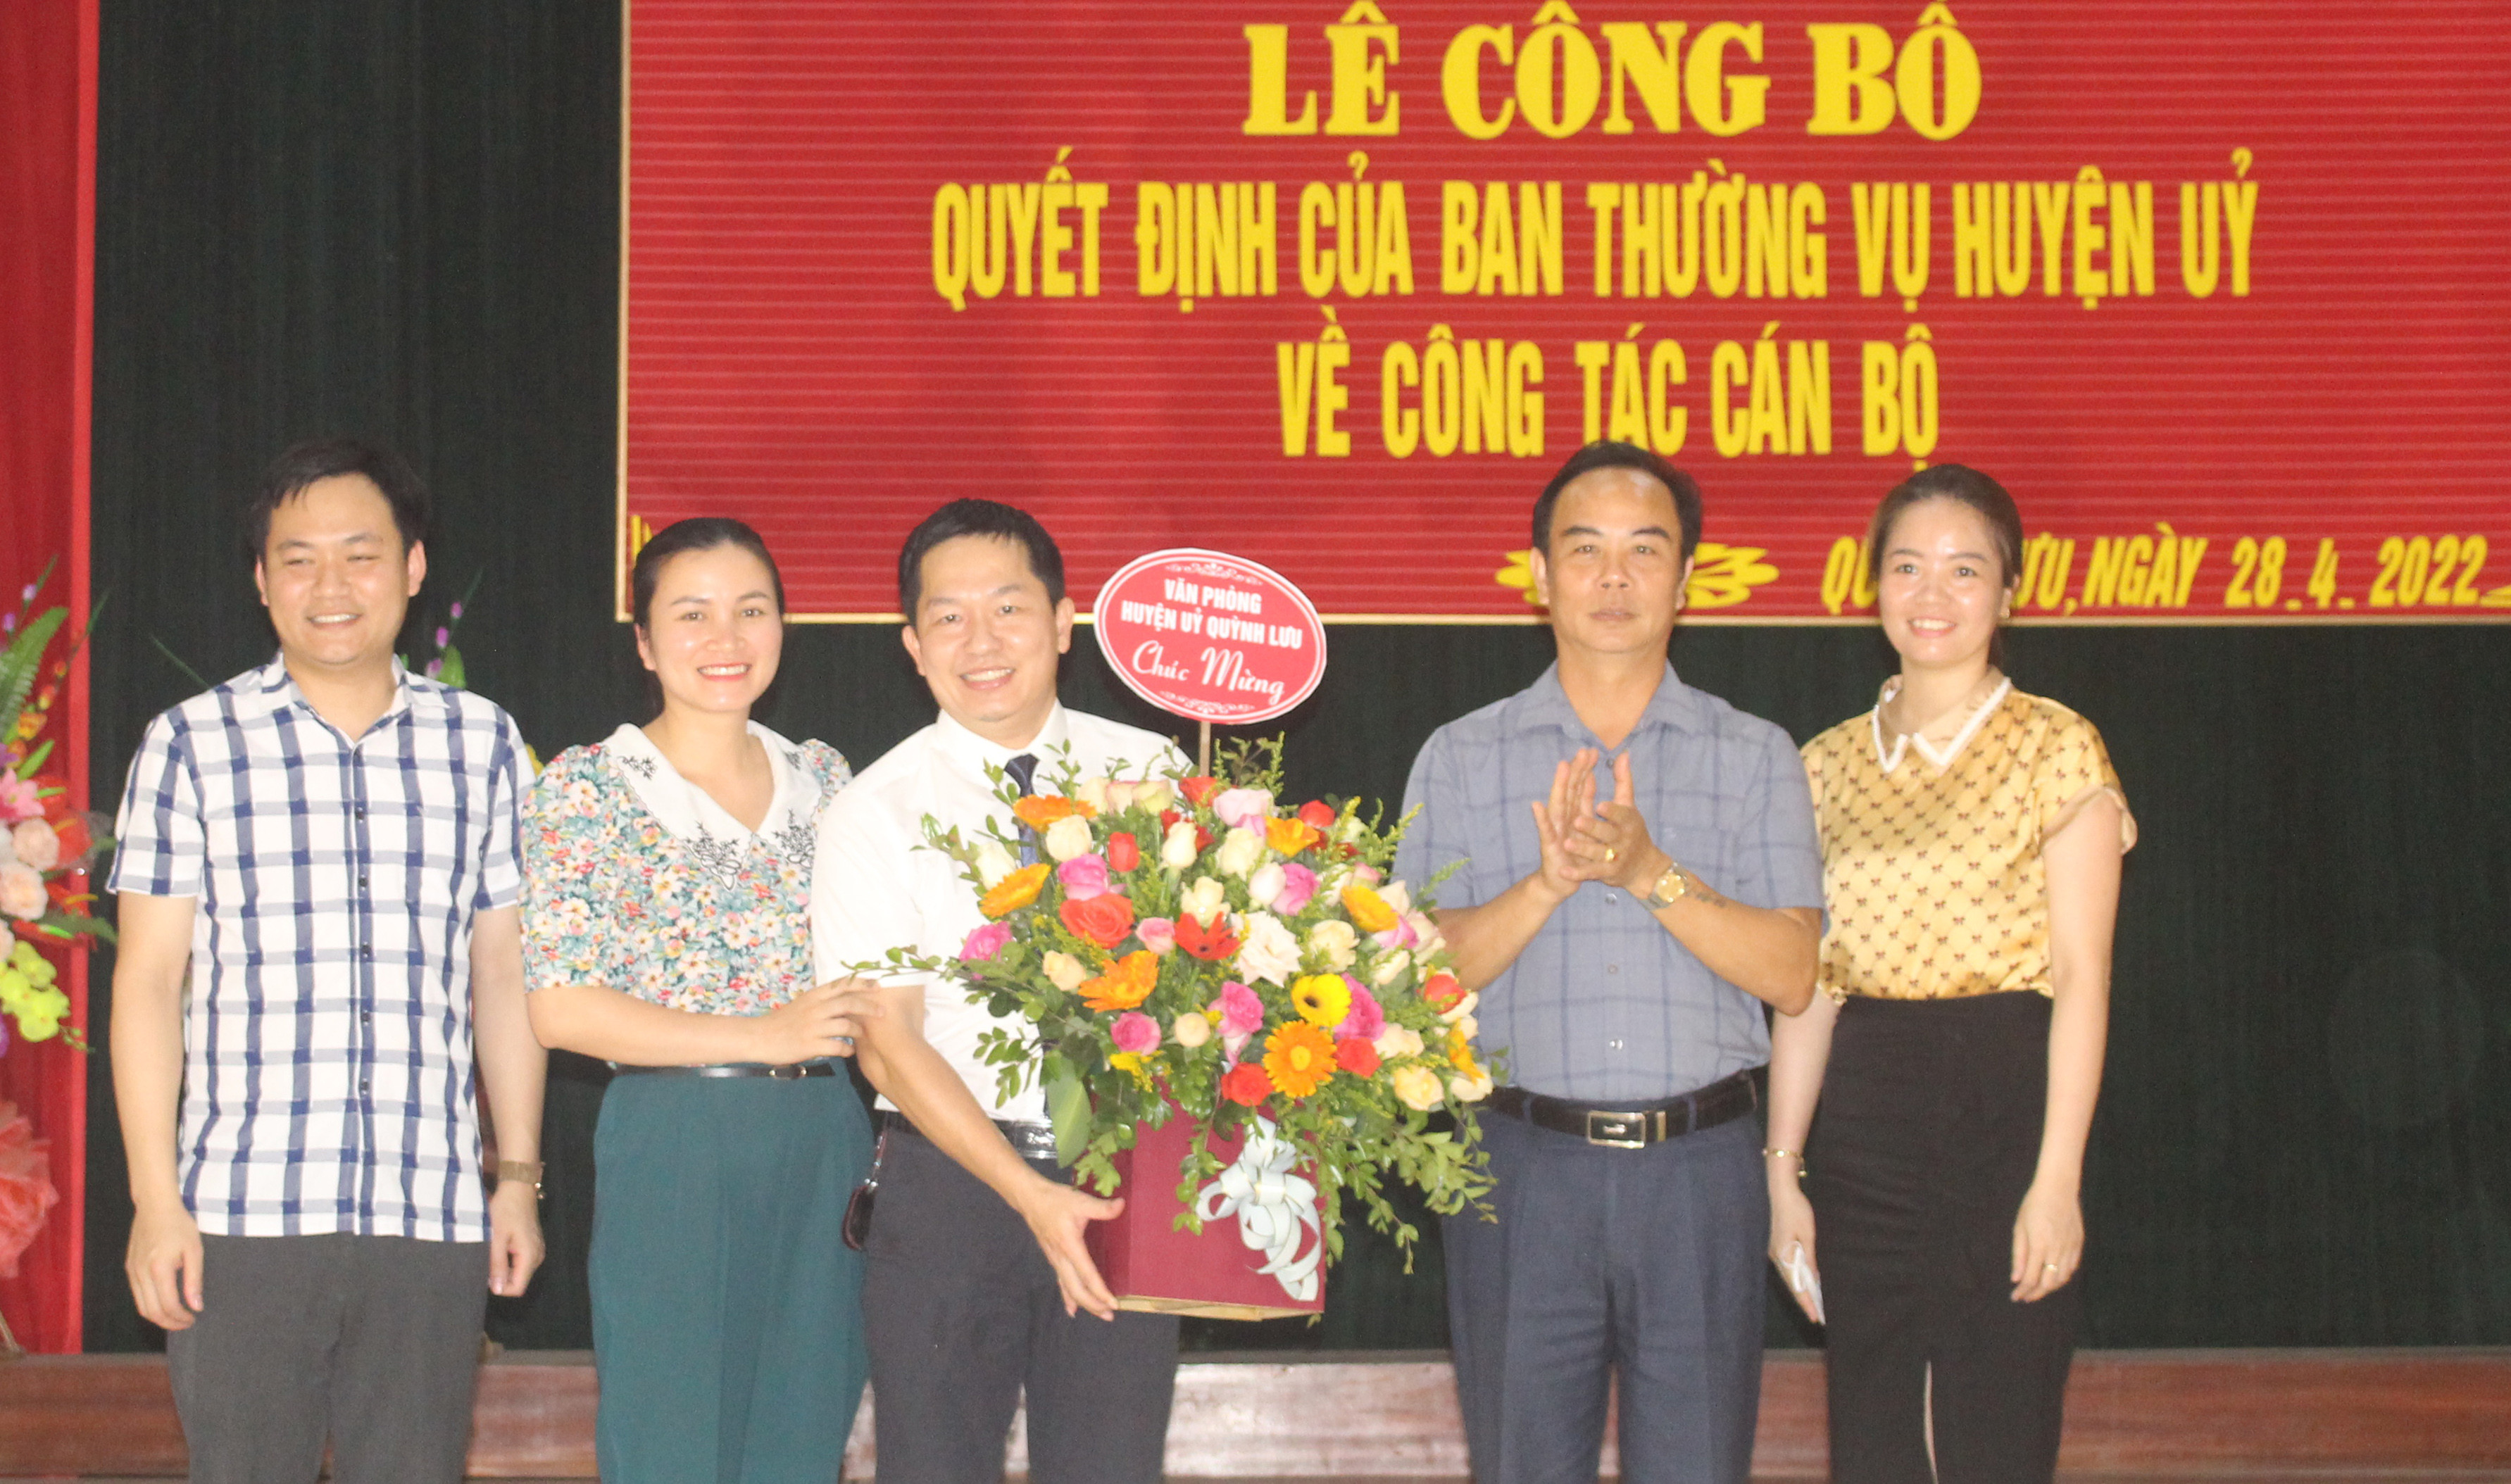 Văn Phòng Huyện ủy Quỳnh Lưu tặng hoa cho chúc mừng đồng chí Hồ Văn Anh nhận nhiệm vụ mới. Ảnh Như Thủy